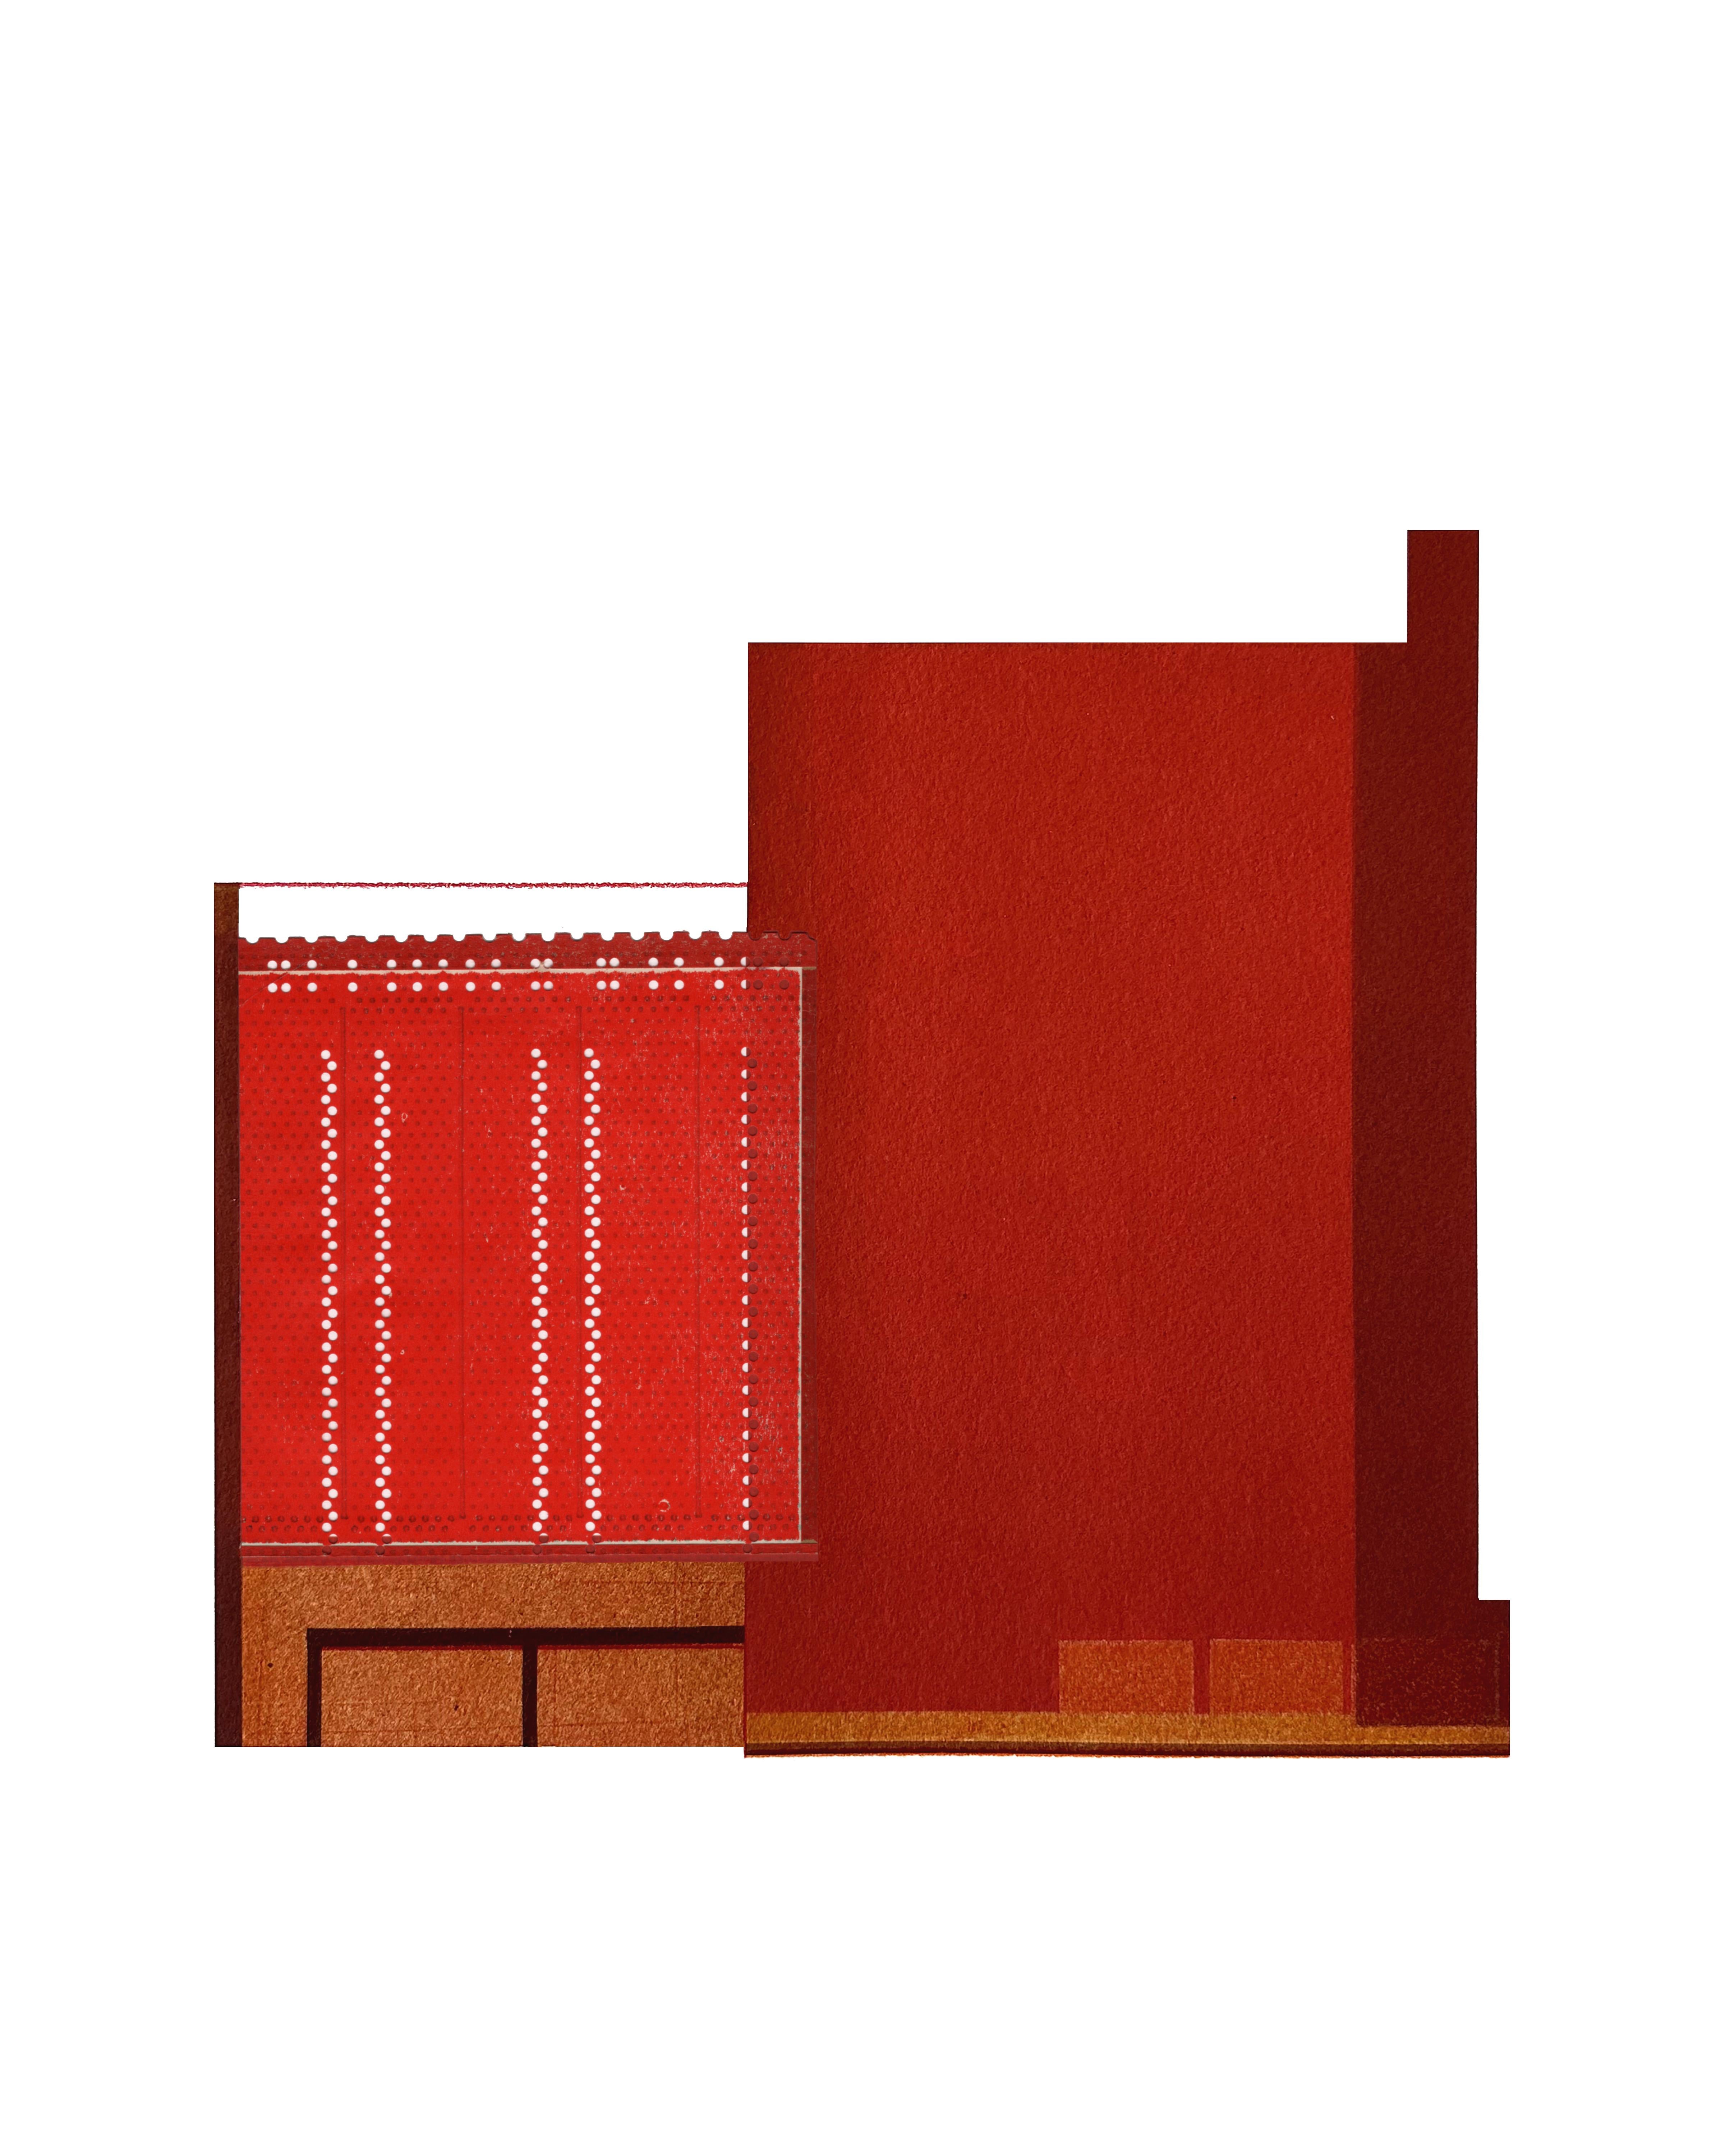 Abstract Drawing Agathe Bouton - Factory XIV : collage architectural urbain moderniste sur monoimpression en rouge, non encadré